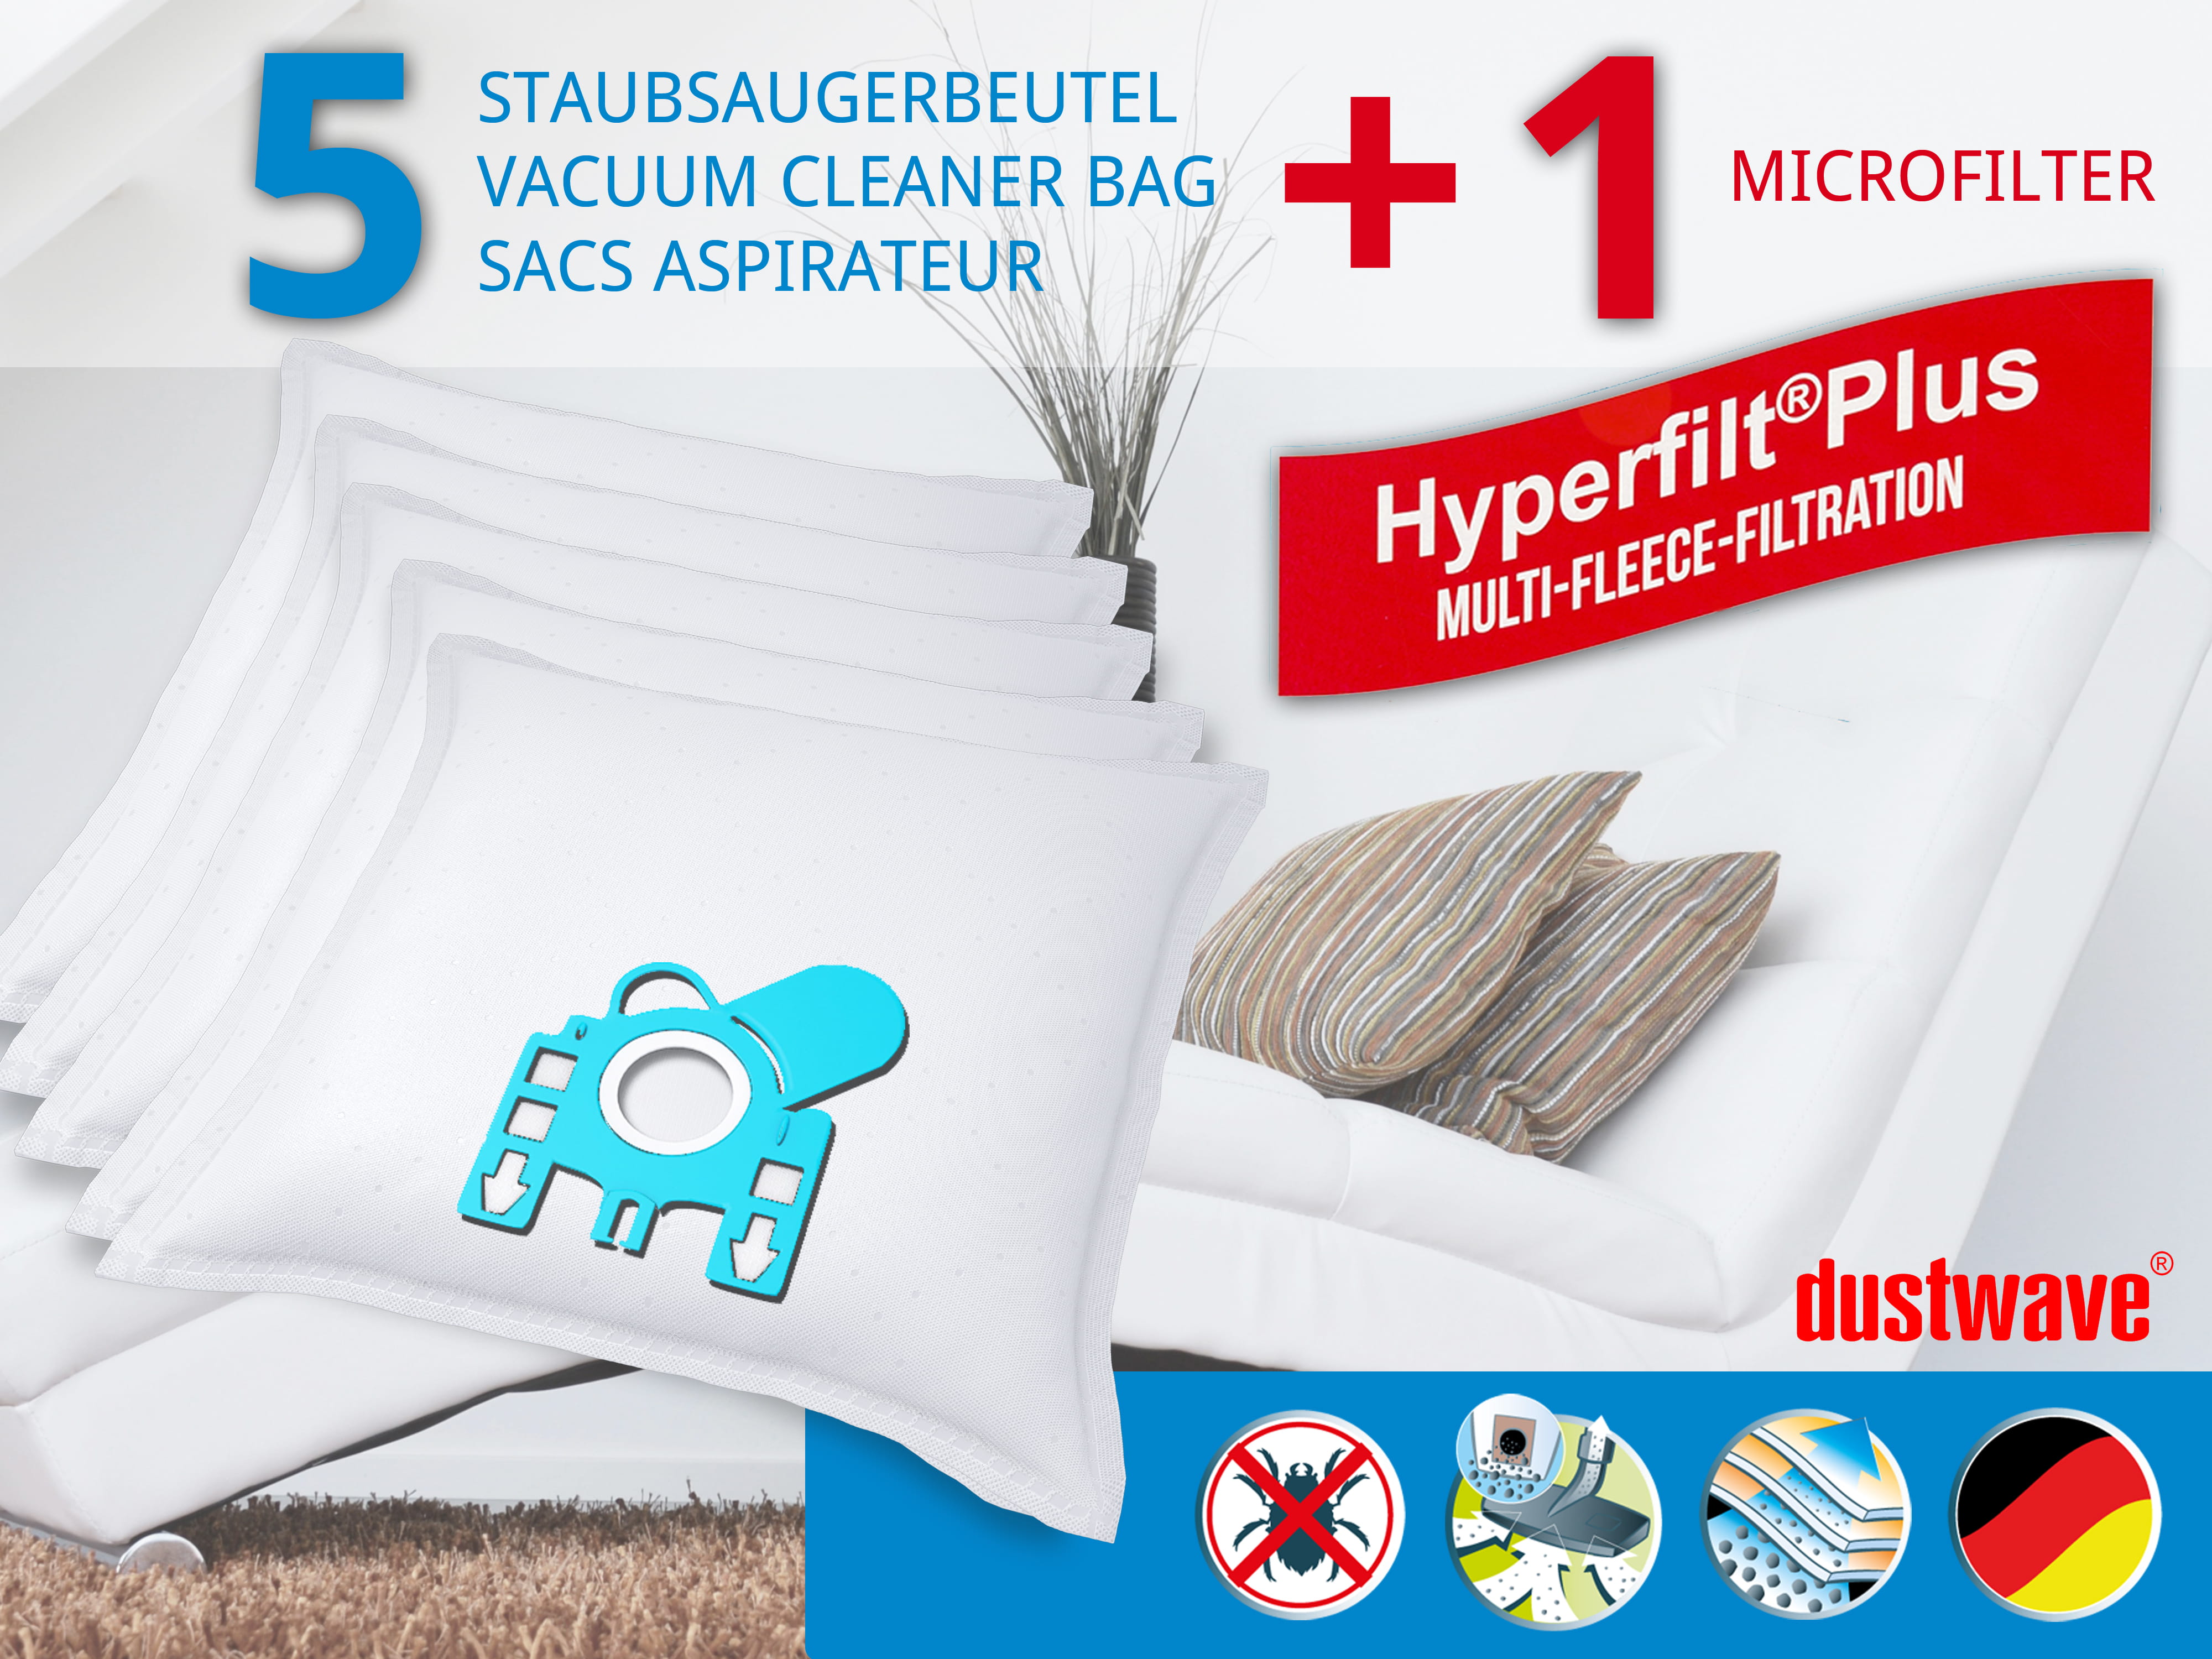 Dustwave® 5 Staubsaugerbeutel für Miele S439i / S 430 i - hocheffizient, mehrlagiges Mikrovlies mit Hygieneverschluss - Made in Germany